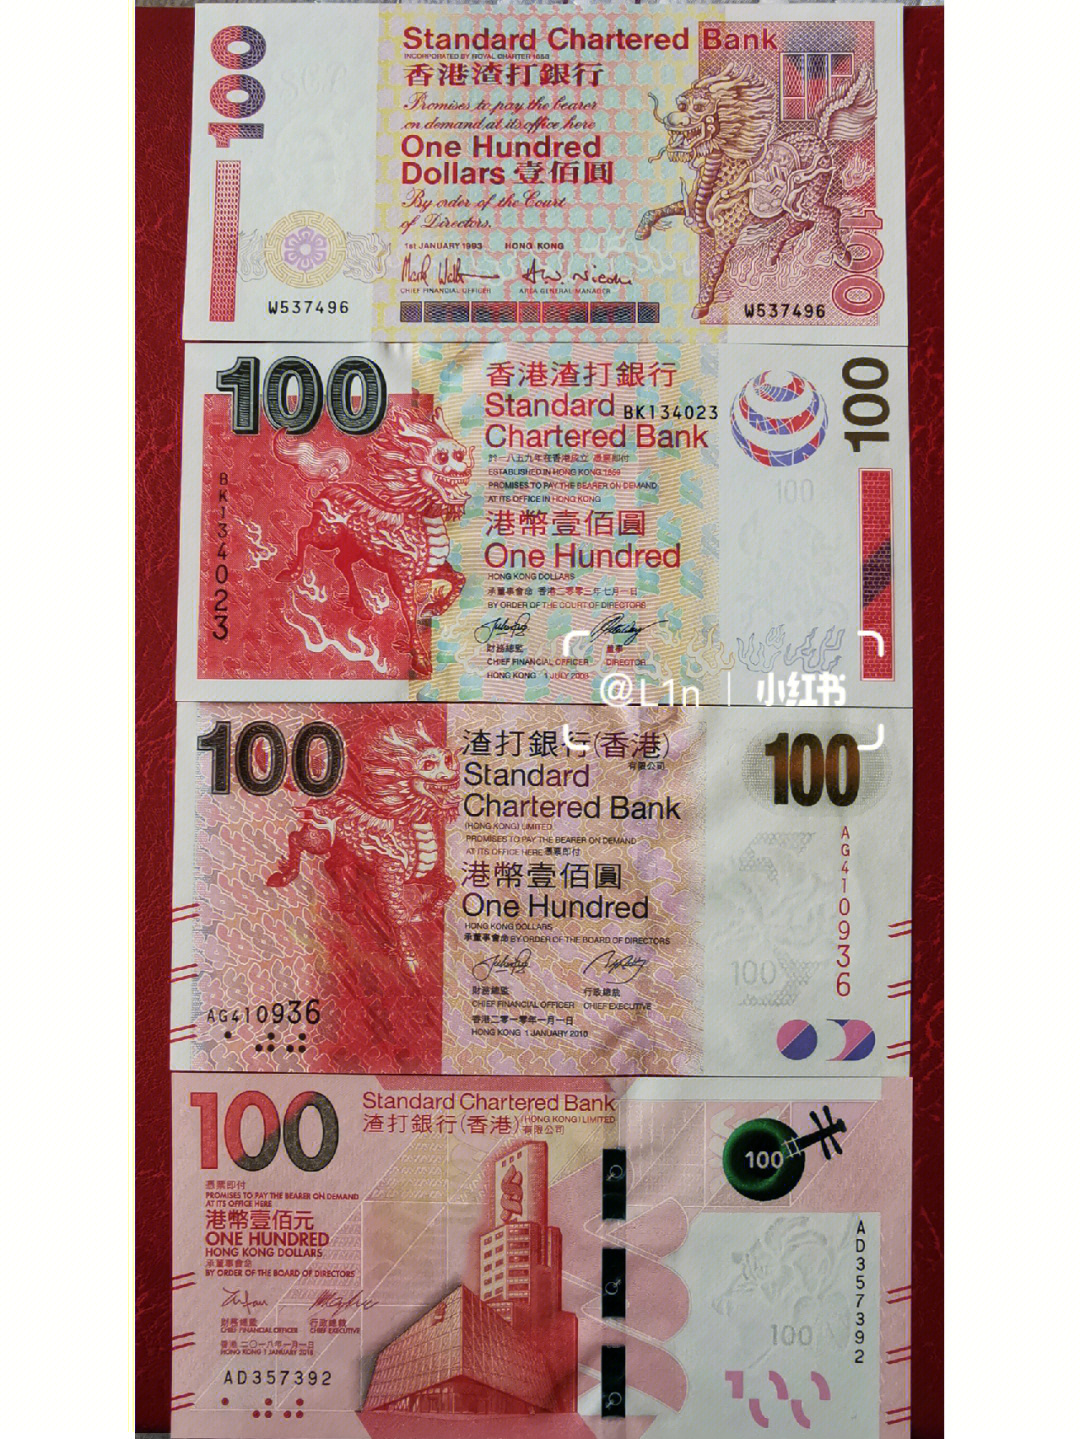 从1979年开始发行的『神兽』系列港币,算得上是最能展现中国传统文化